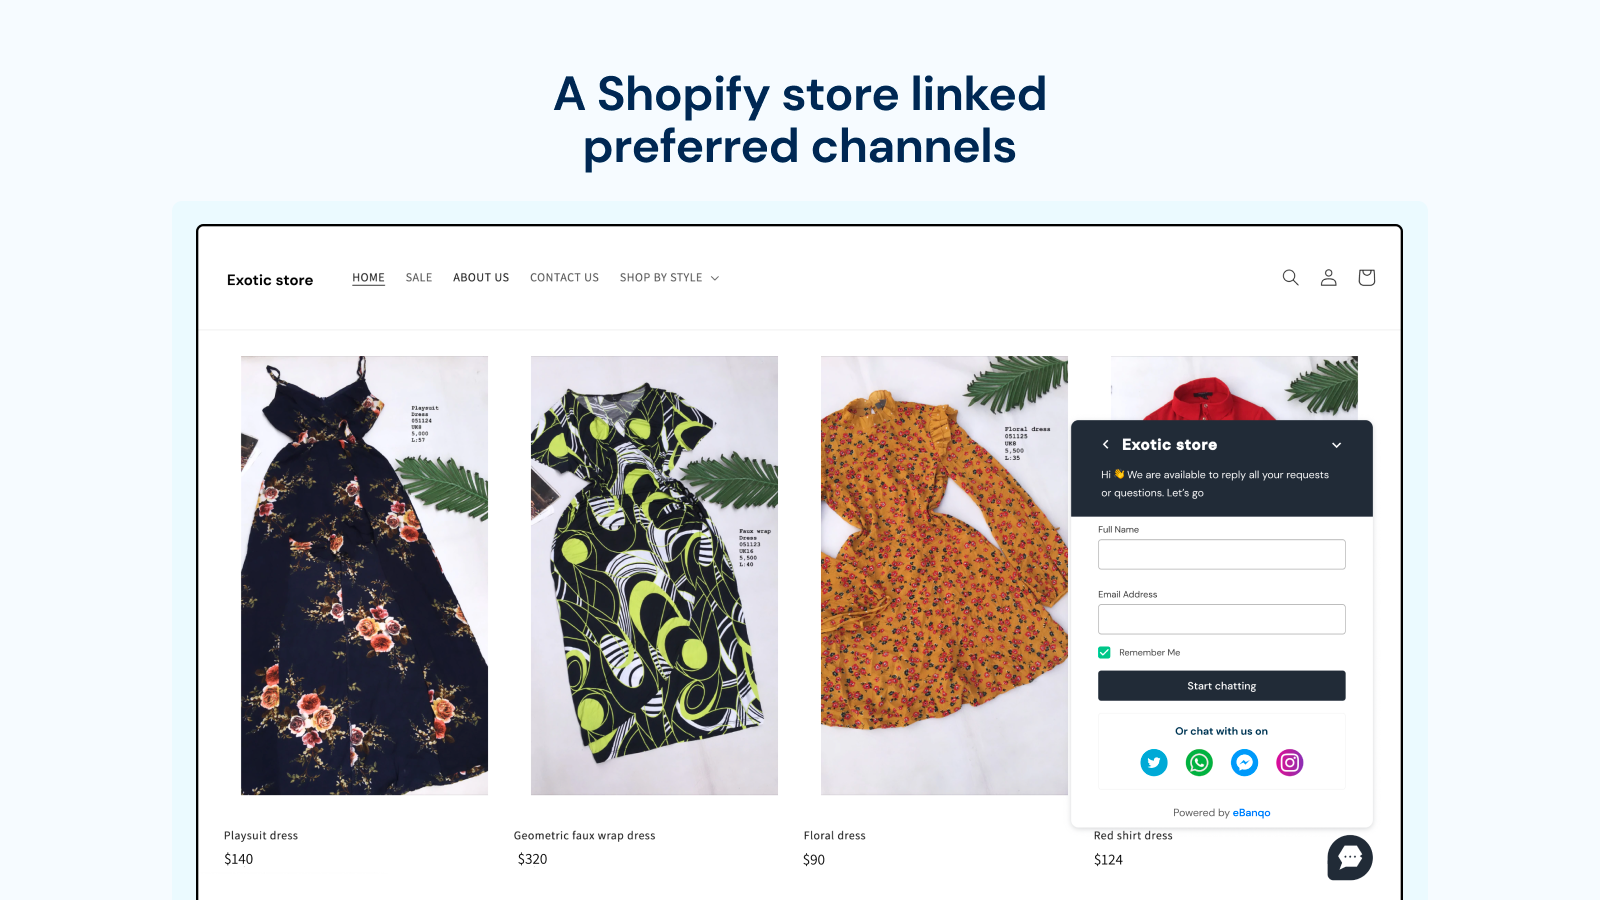 Uma loja Shopify vinculada aos canais preferidos